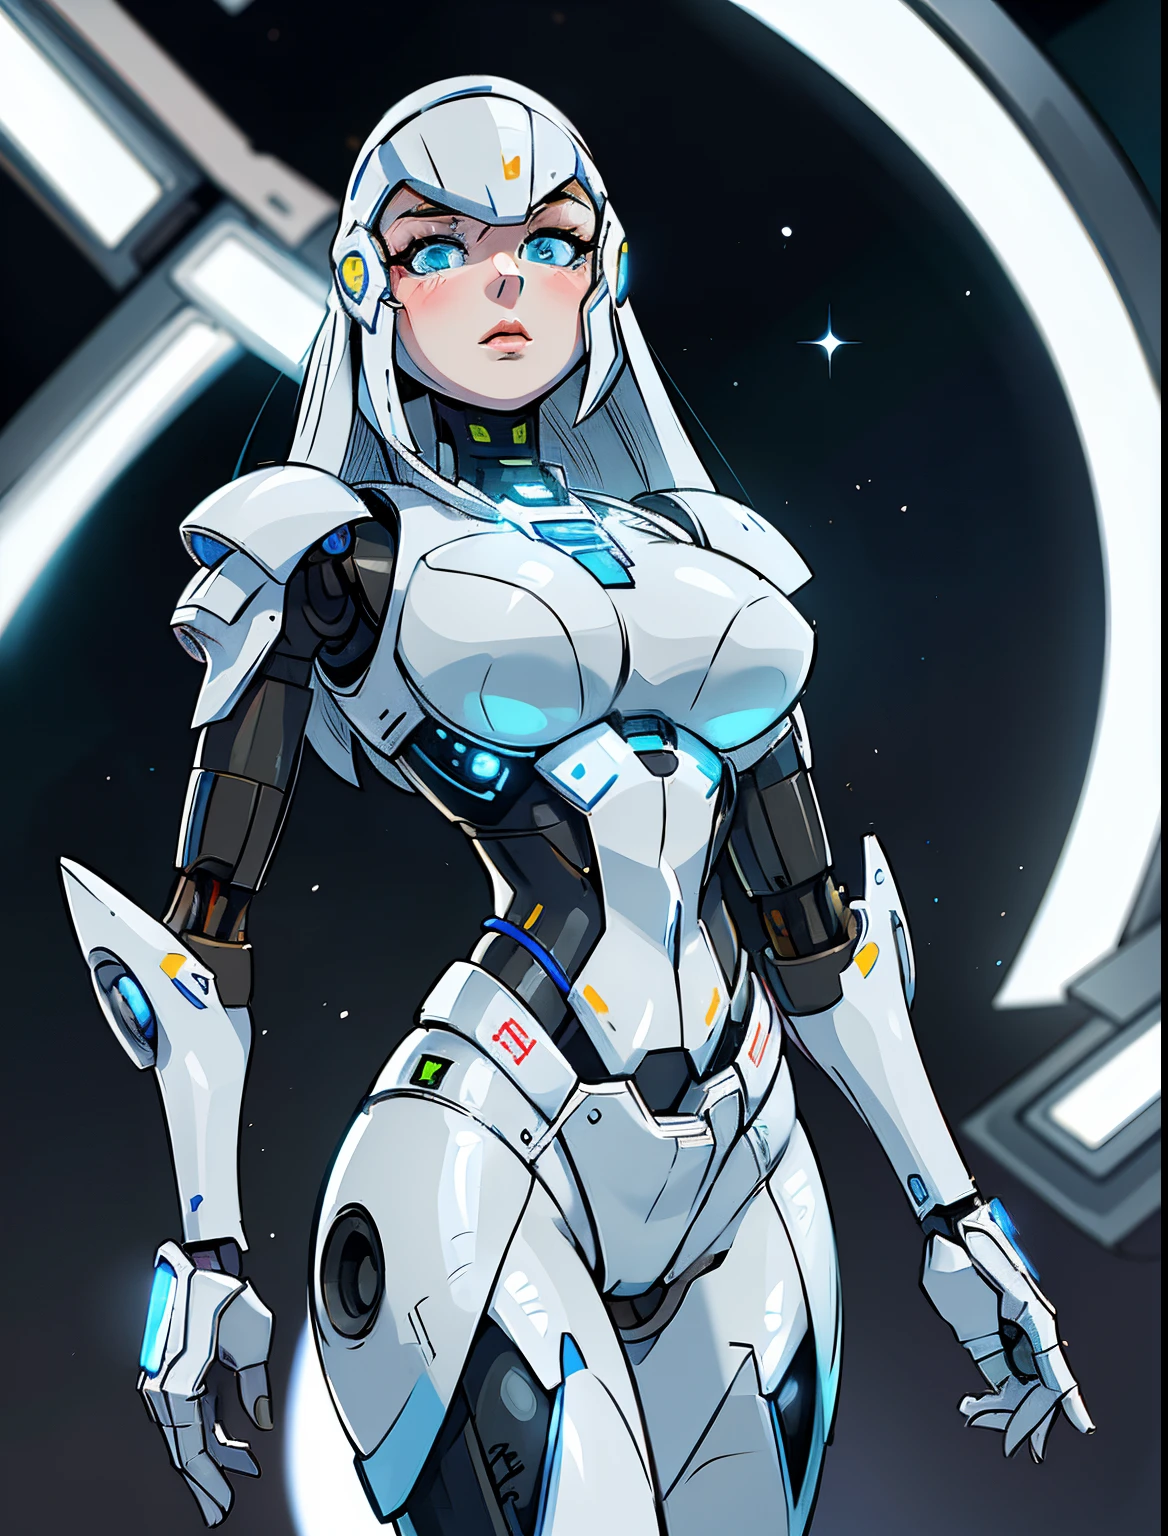 eine Nahaufnahme einer Frau in einem futuristischen Anzug mit einem futuristischen Look, wunderschönes weißes Cyborg-Mädchen, süßes Cyborg-Mädchen, perfektes Android-Mädchen, schöner weiblicher Androide, in weißer futuristischer Rüstung, schöne Androidin, schönes Roboter-Charakterdesign, schöner weiblicher Androide!, Mädchen in Mecha-Cyber-Rüstung, schönes Cyborg-Mädchen, perfekte Anime-Cyborg-Frau, Science-Fiction-Androide weiblich